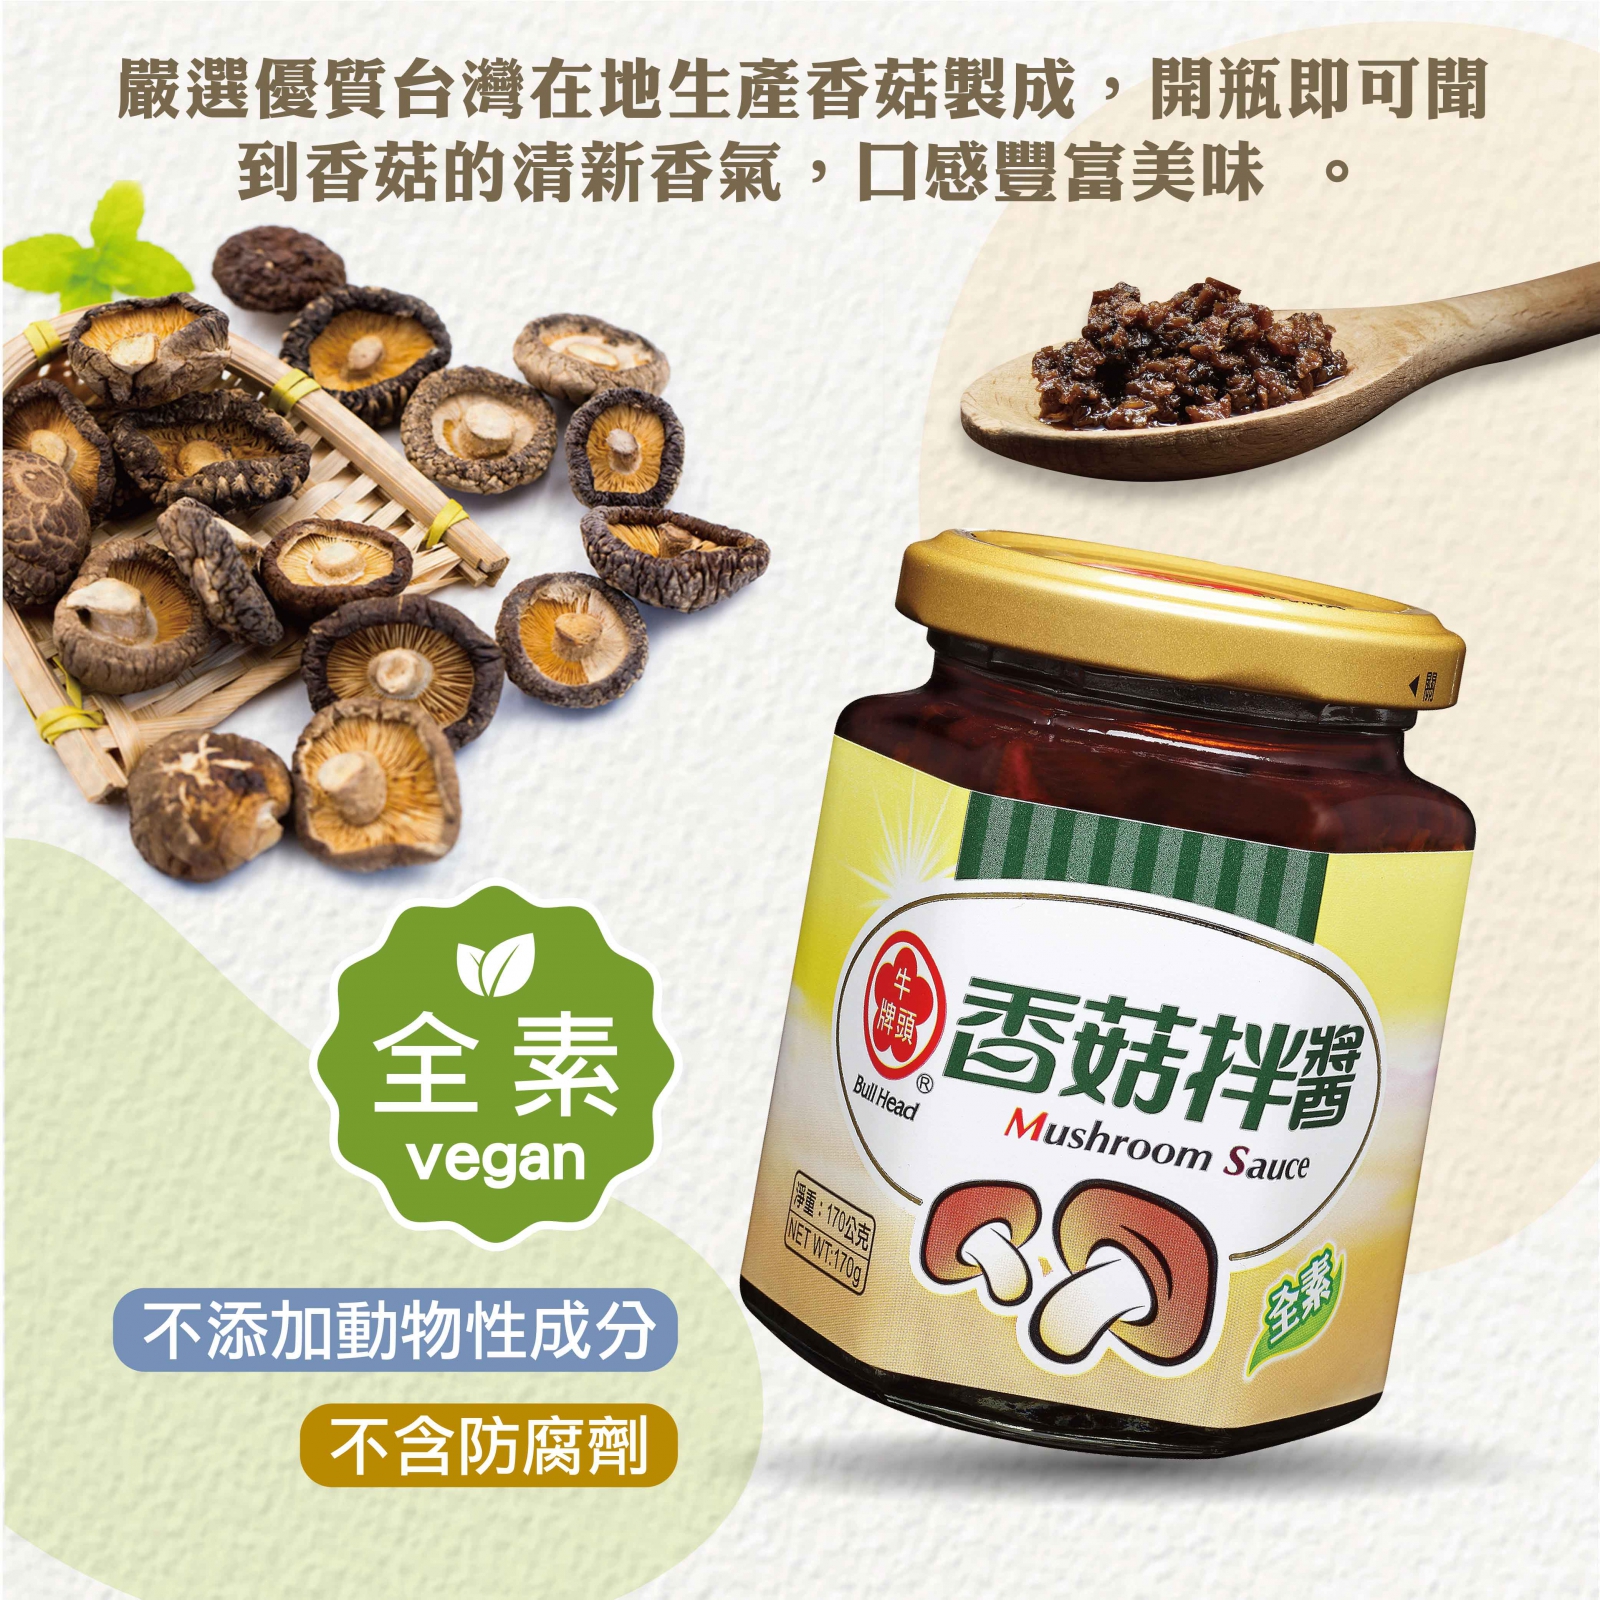 香菇拌醬170g嚴選優質台灣在地生產香菇製成，開瓶即可聞到香菇的清新香氣，口感豐富美味。